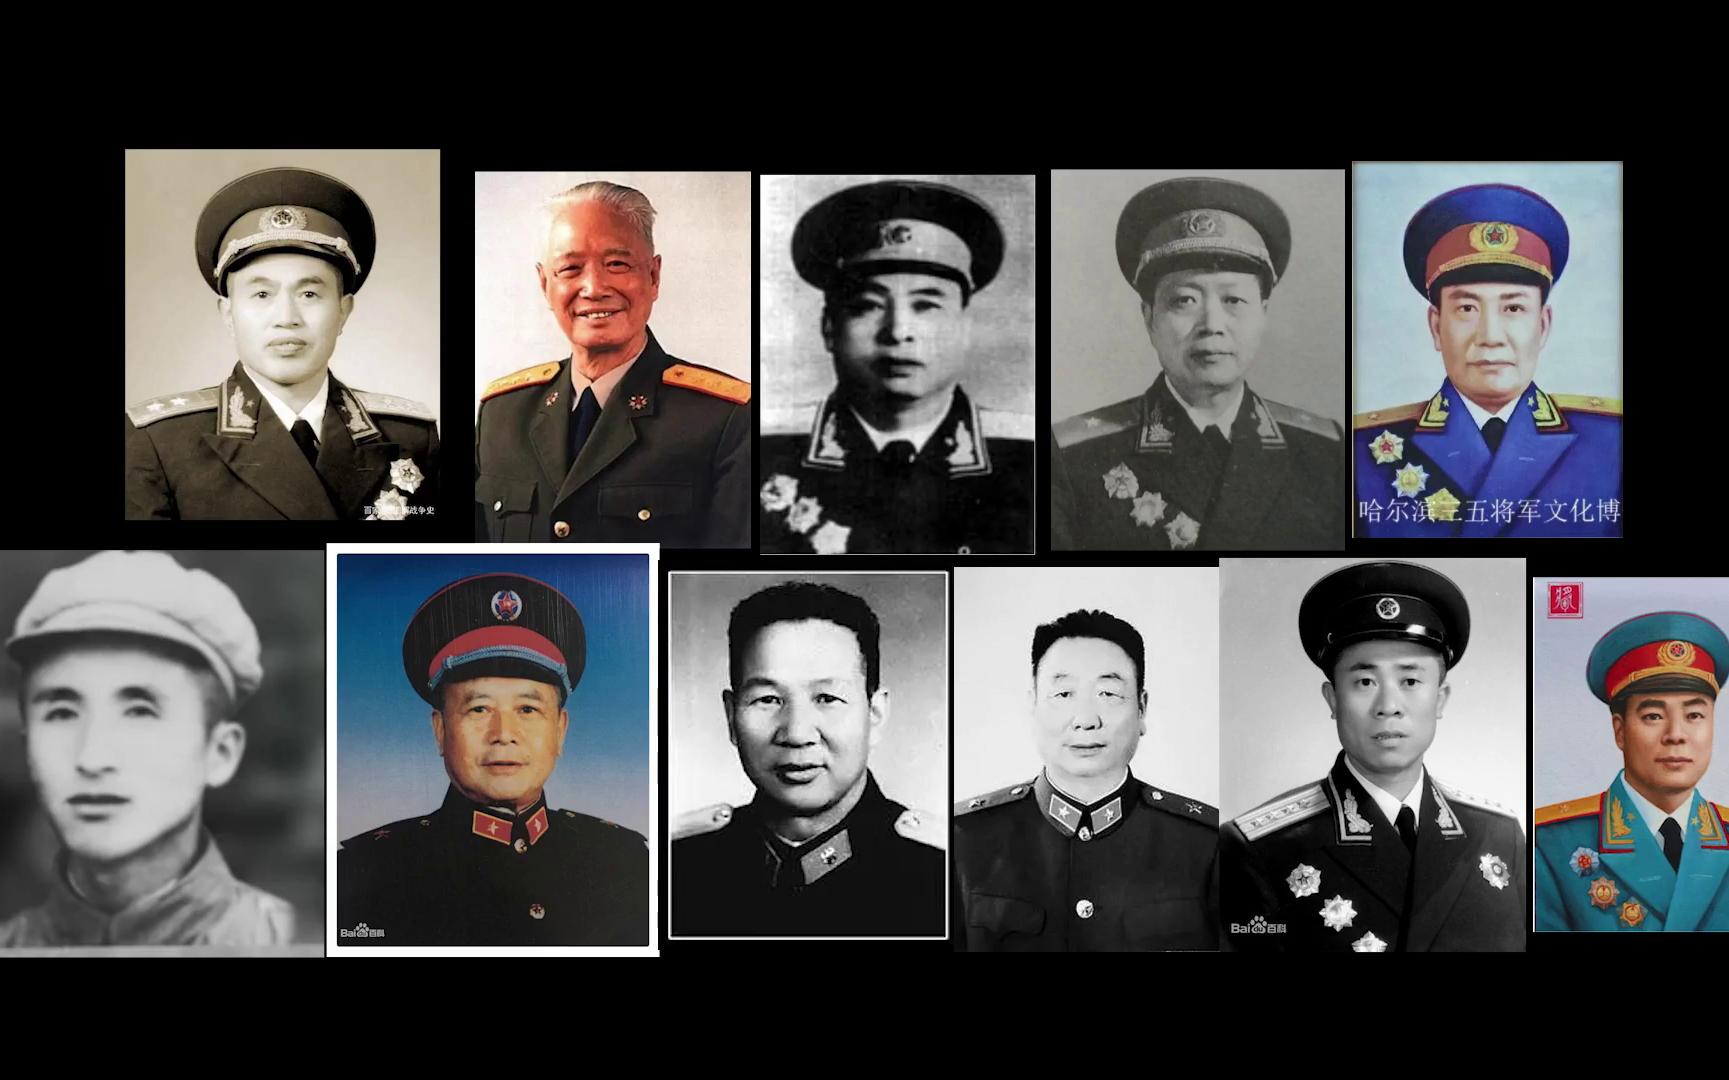 沈阳举行纪念中国人民志愿军抗美援朝出国作战70周年活动--读图--首页